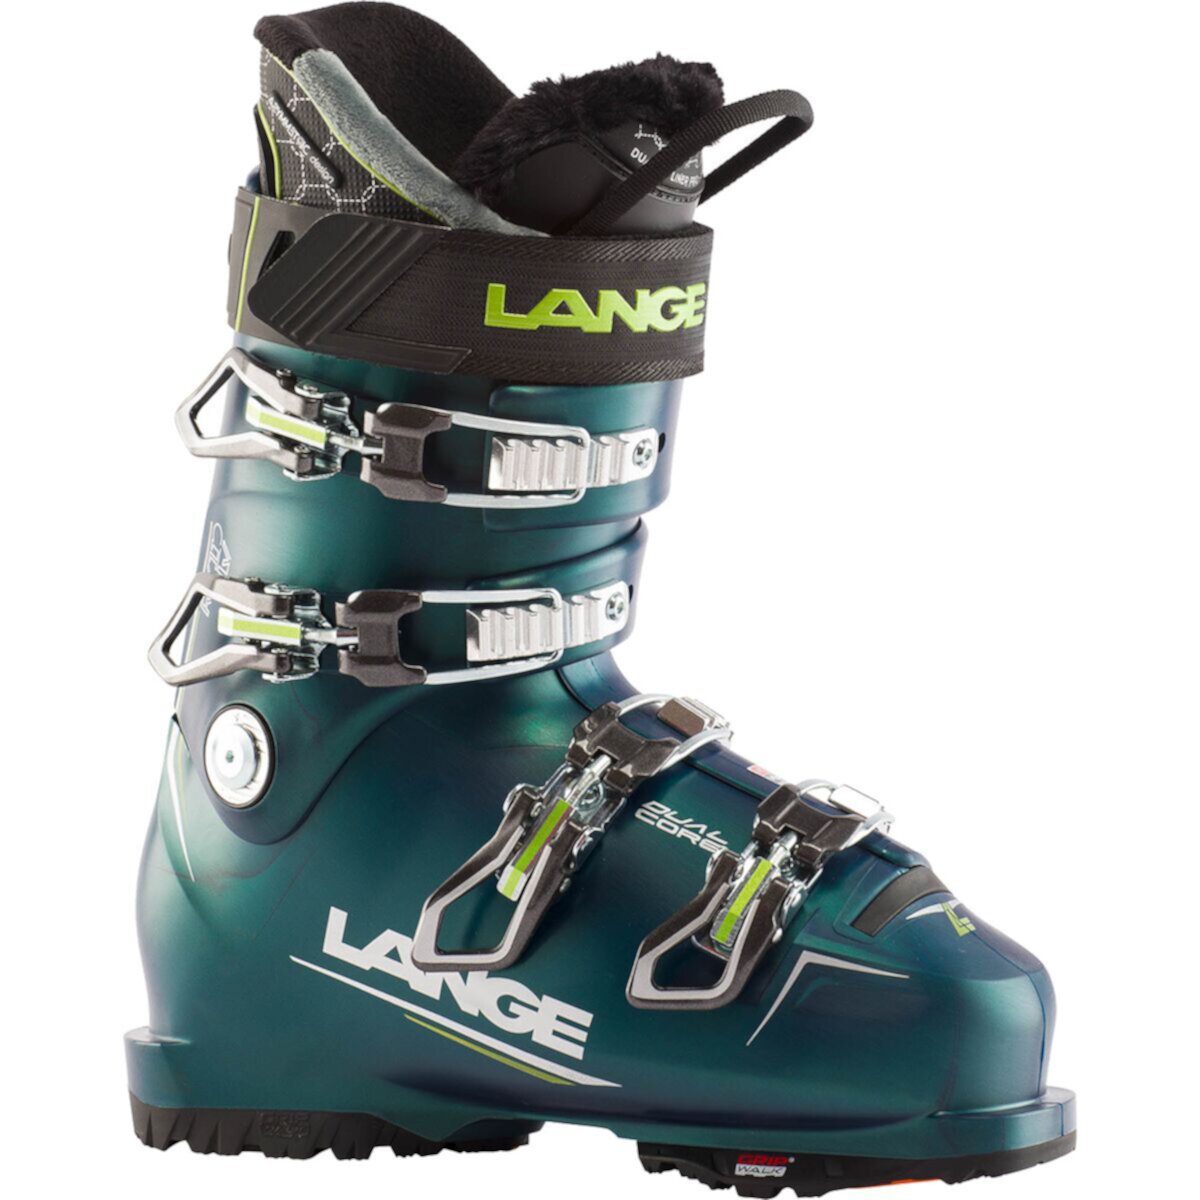 Лыжные ботинки RX 110 W LV - 2022 Lange